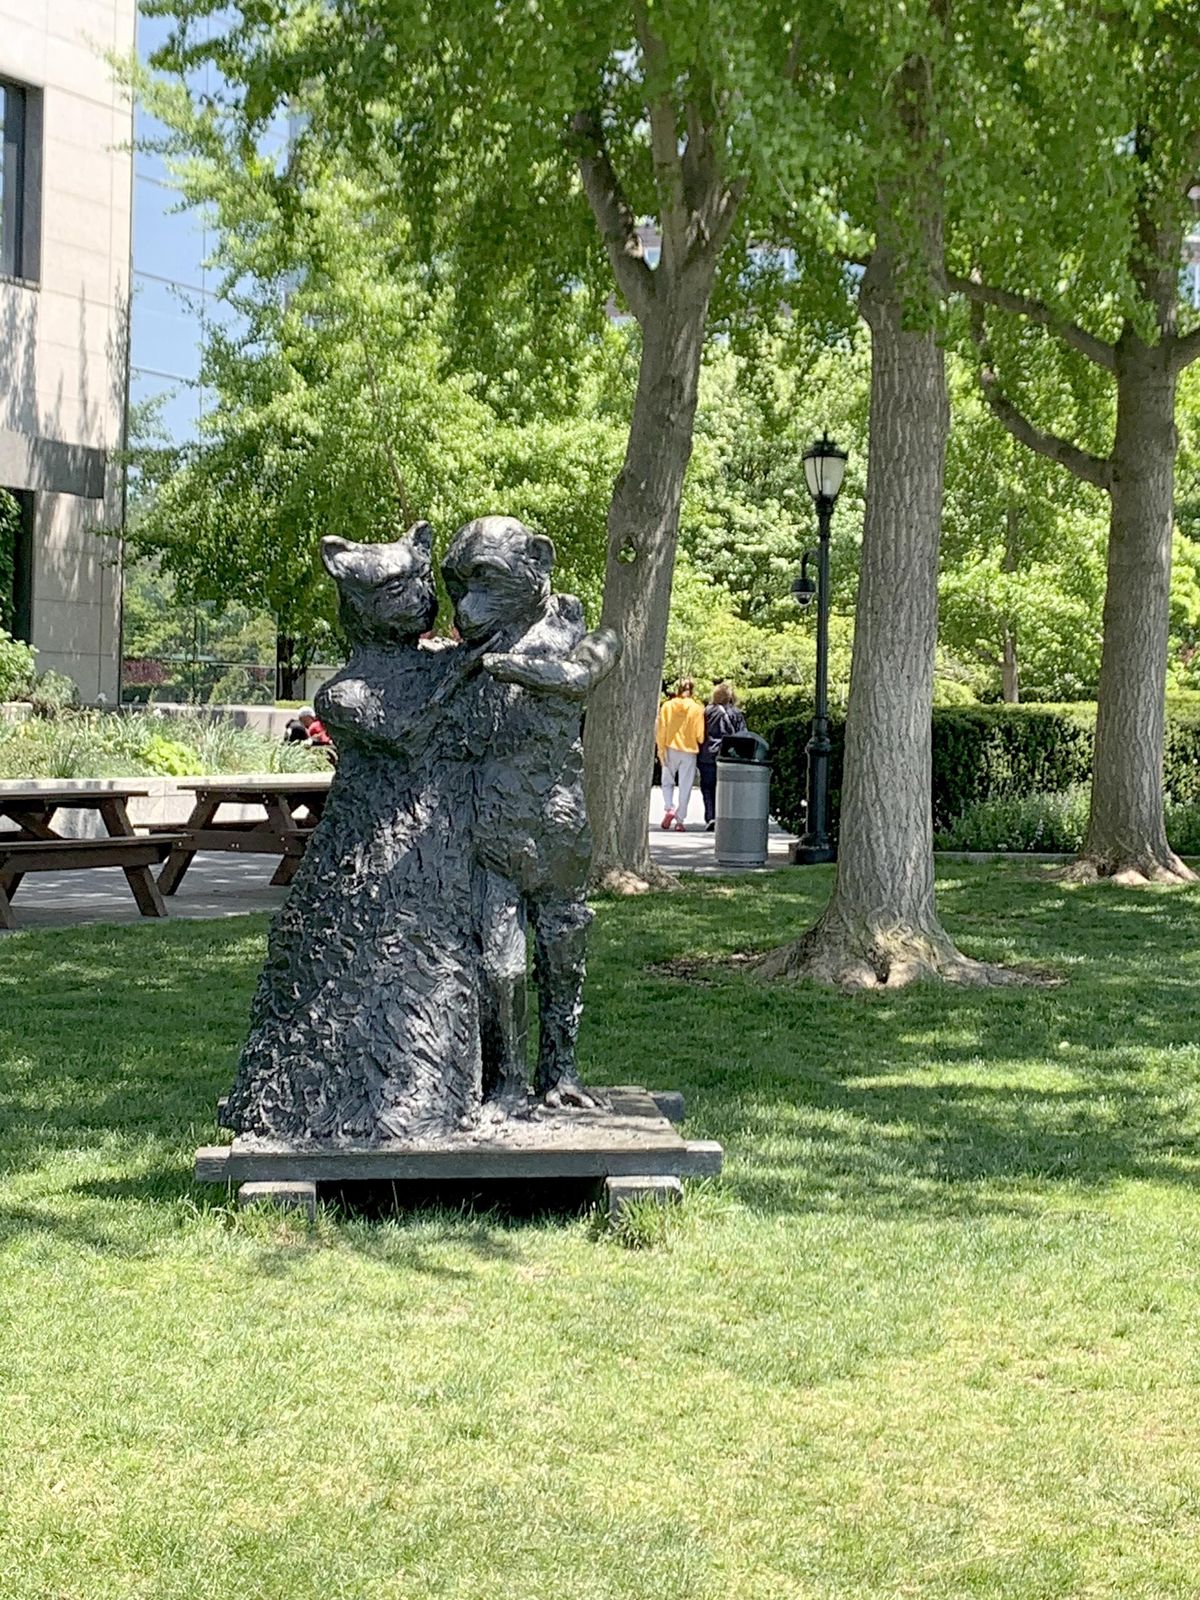 Parks & Public Art: Statues & Sculptures in Battery Park City